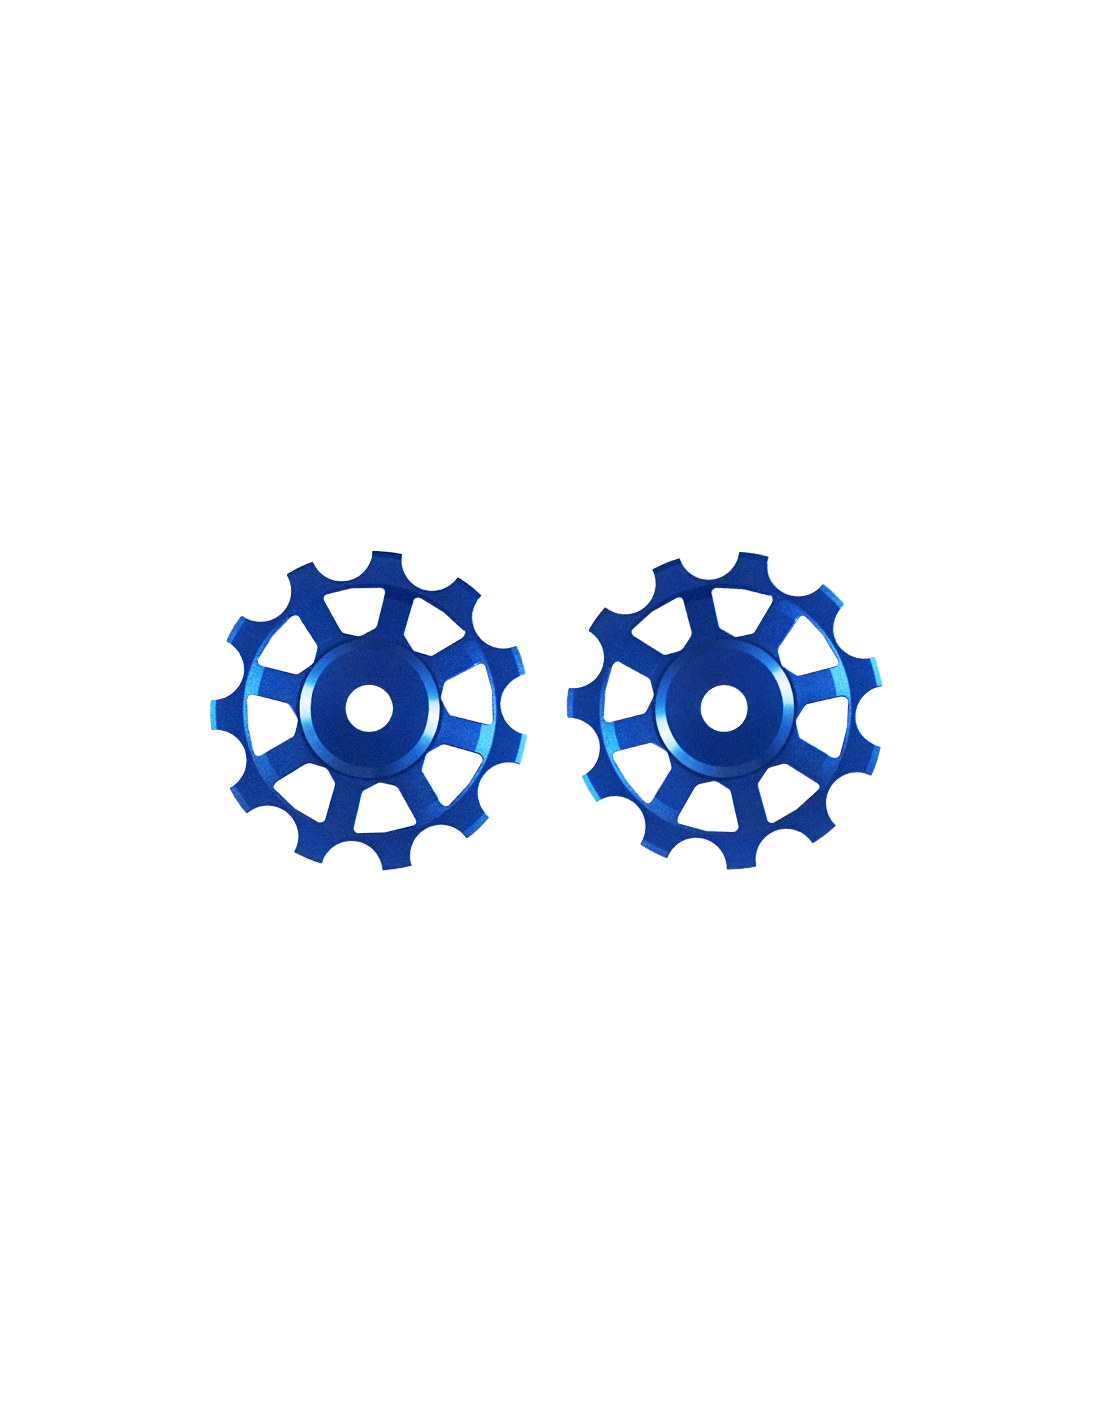 Novaride 11T Ceramic Pulley Wheels - Blue